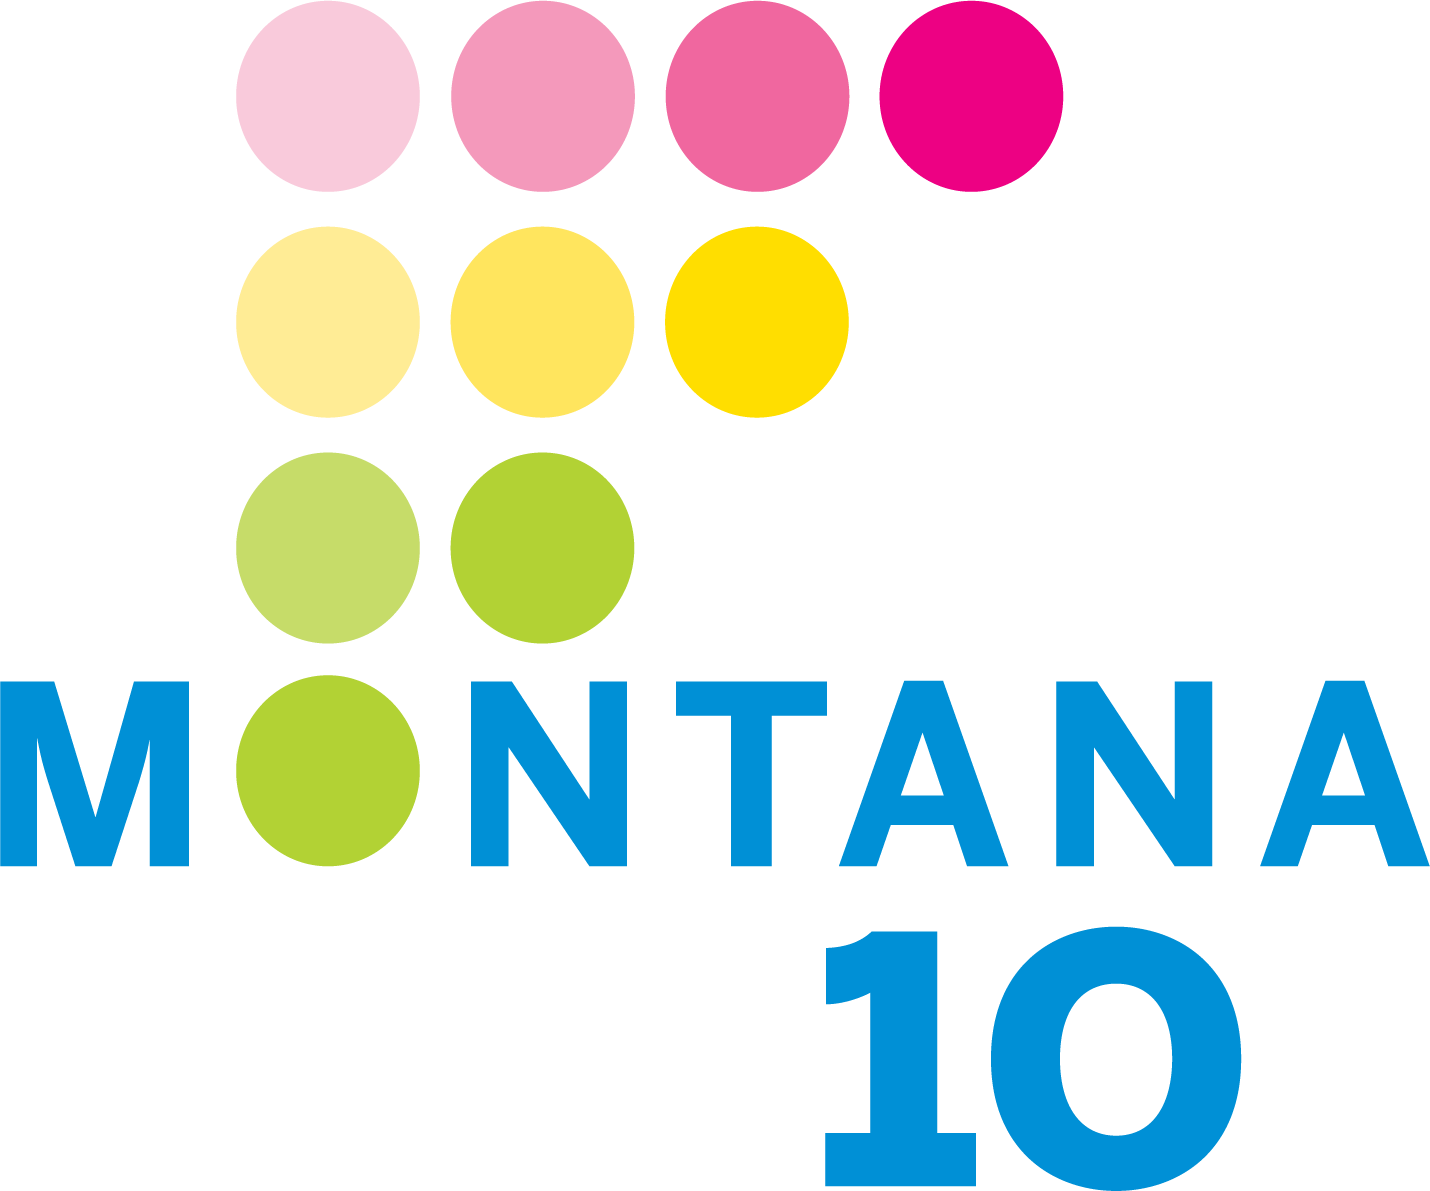 Montana 10 Logo